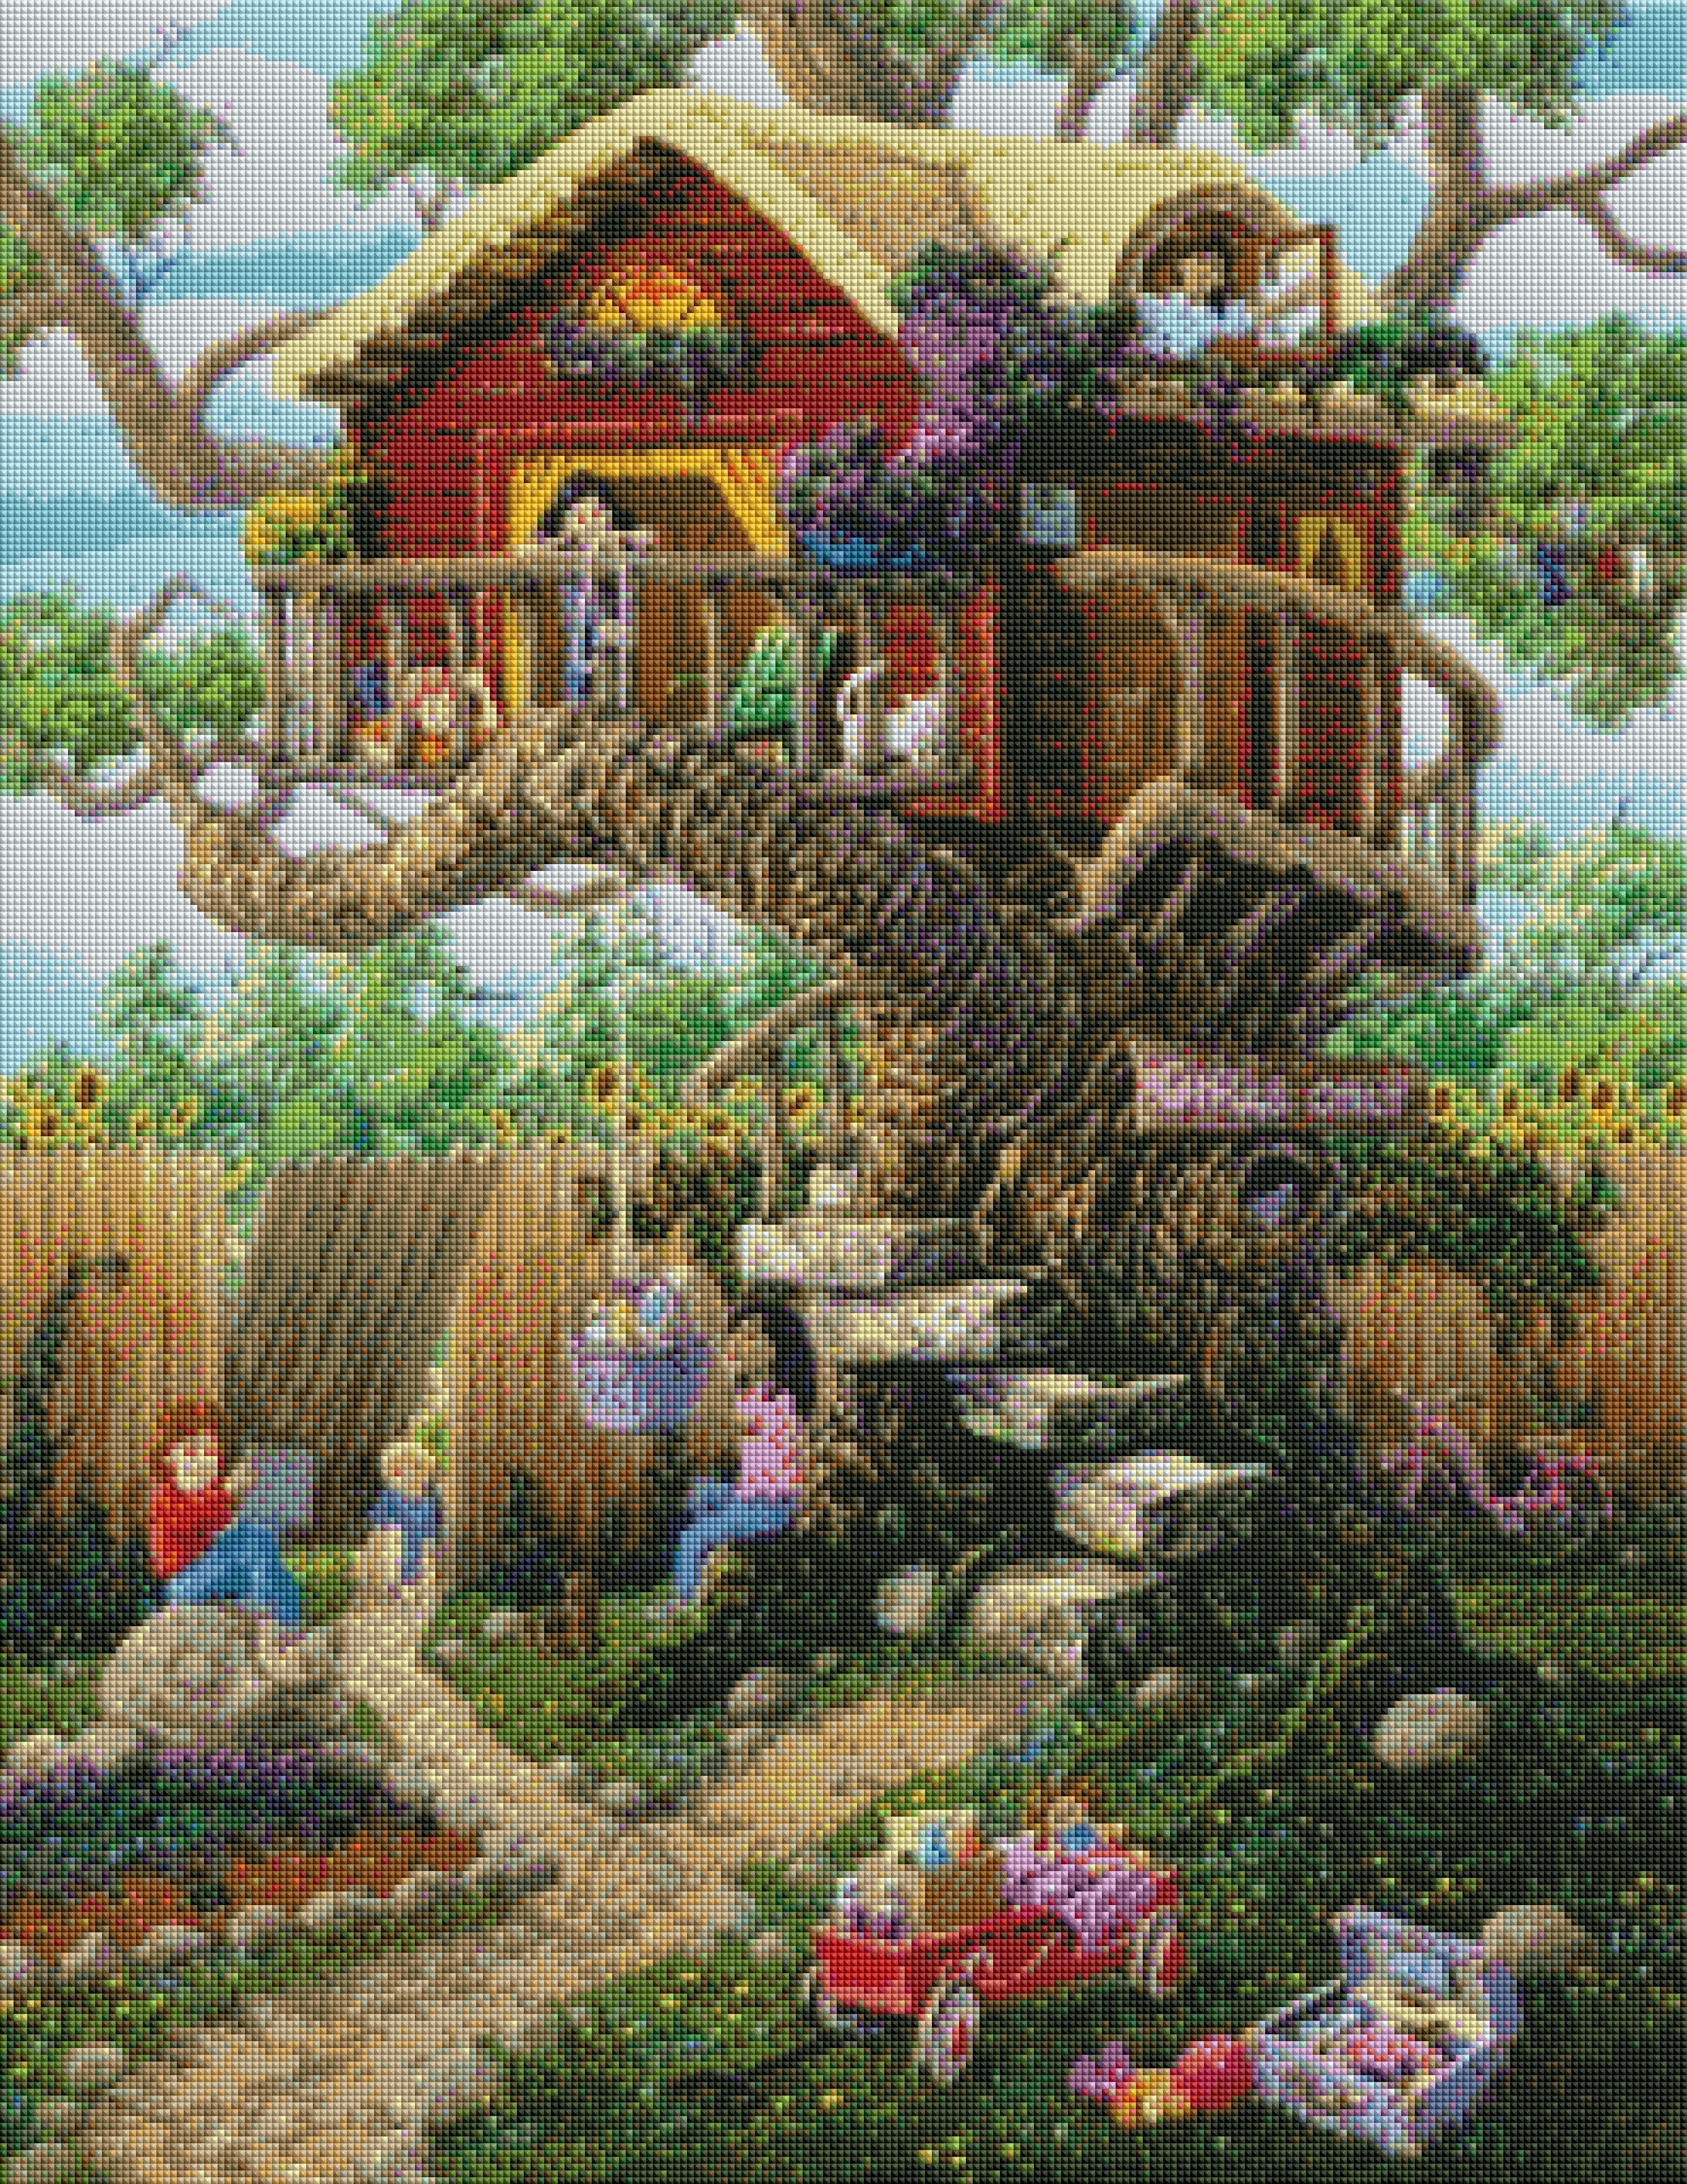 Diamond Painting - Tree House